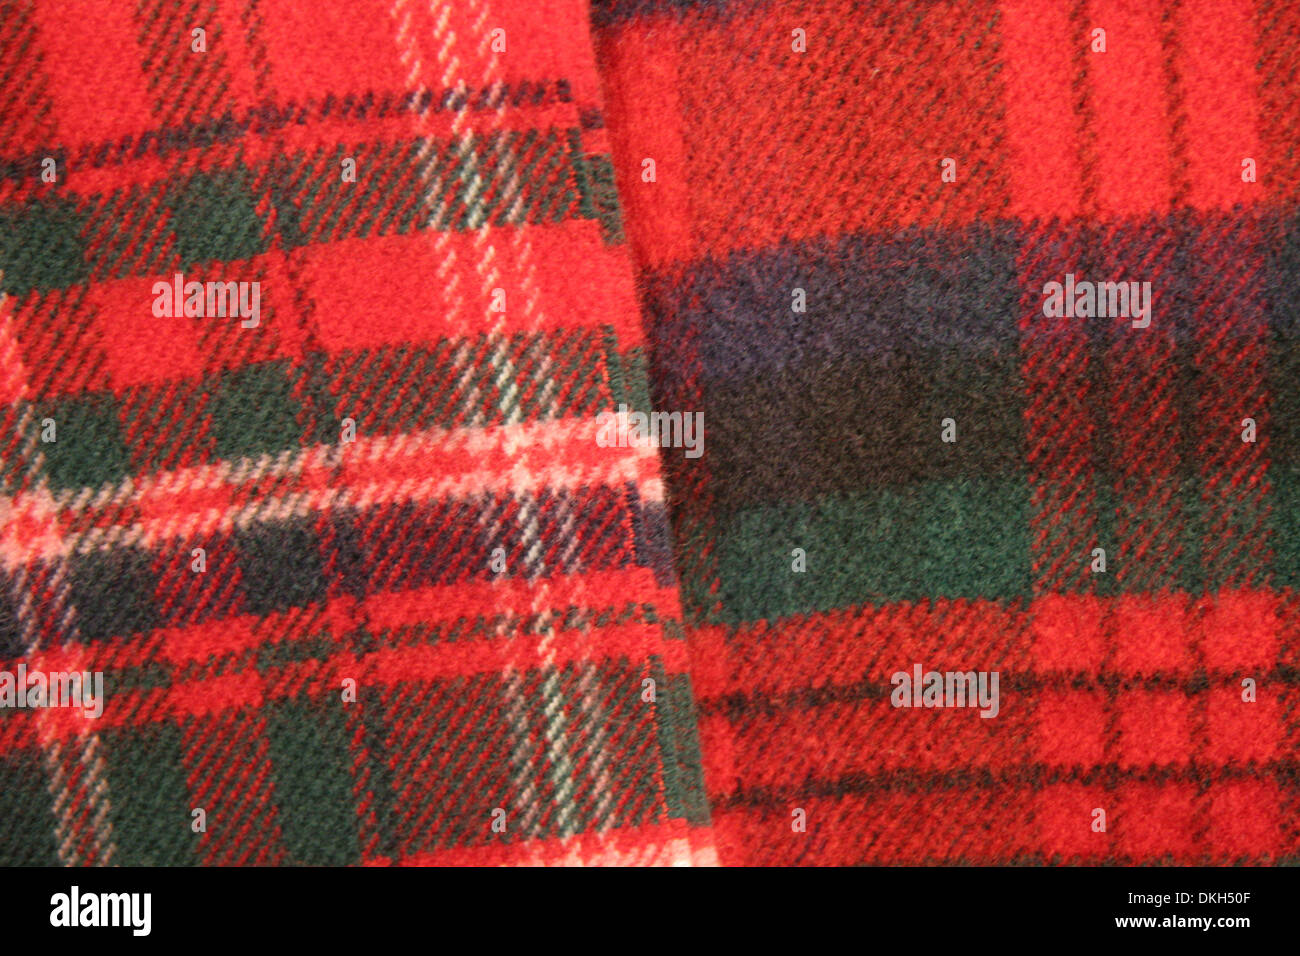 Close up de tissu tartan. Combinaison de rouges, verts, bleus et crème. Scotish traditionnellement représentant des clans, l'Écosse. Banque D'Images